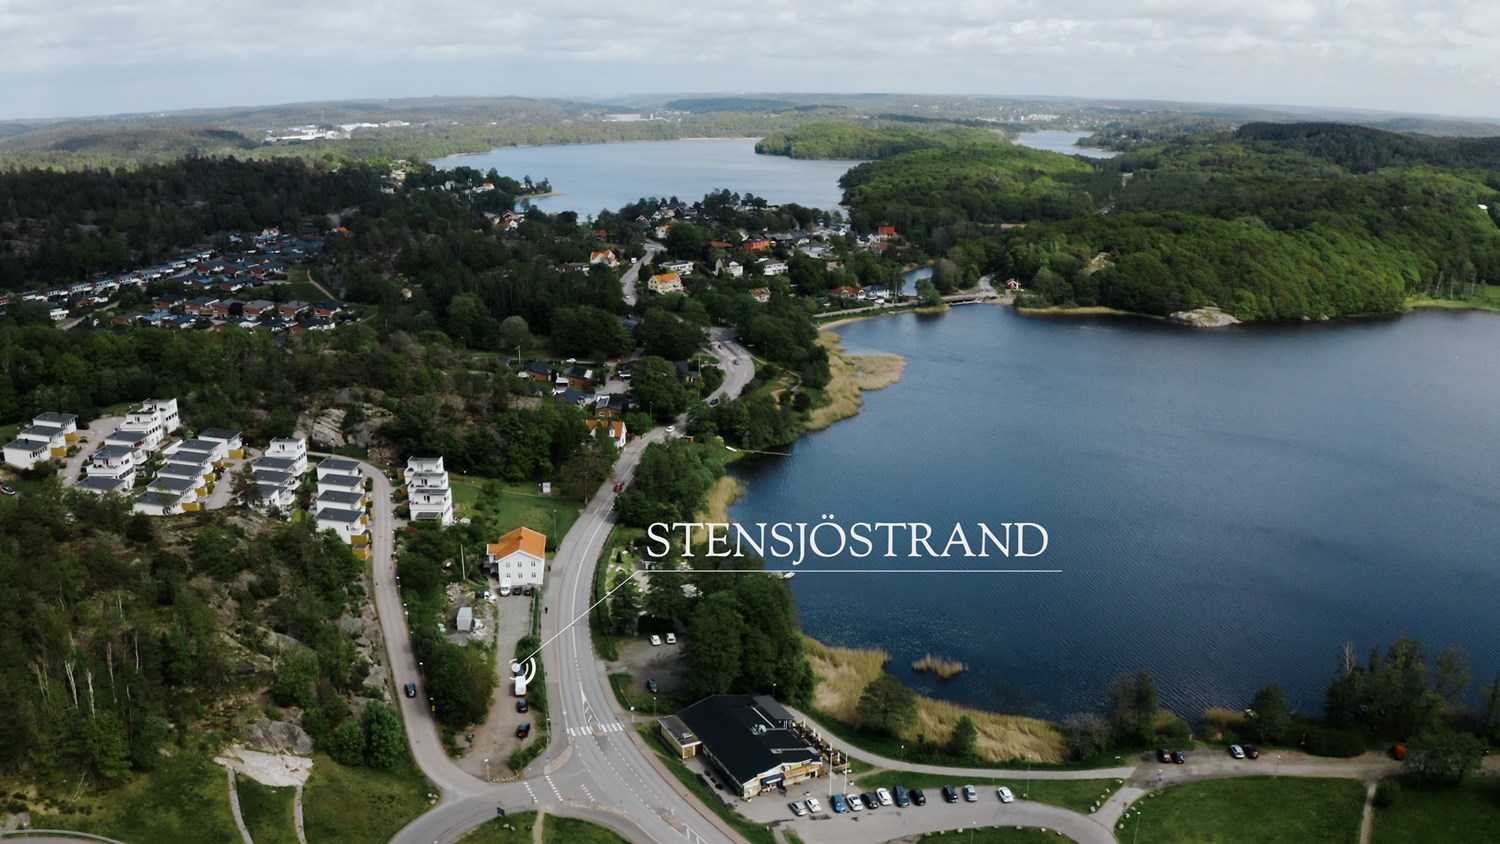 Stensjöstrand